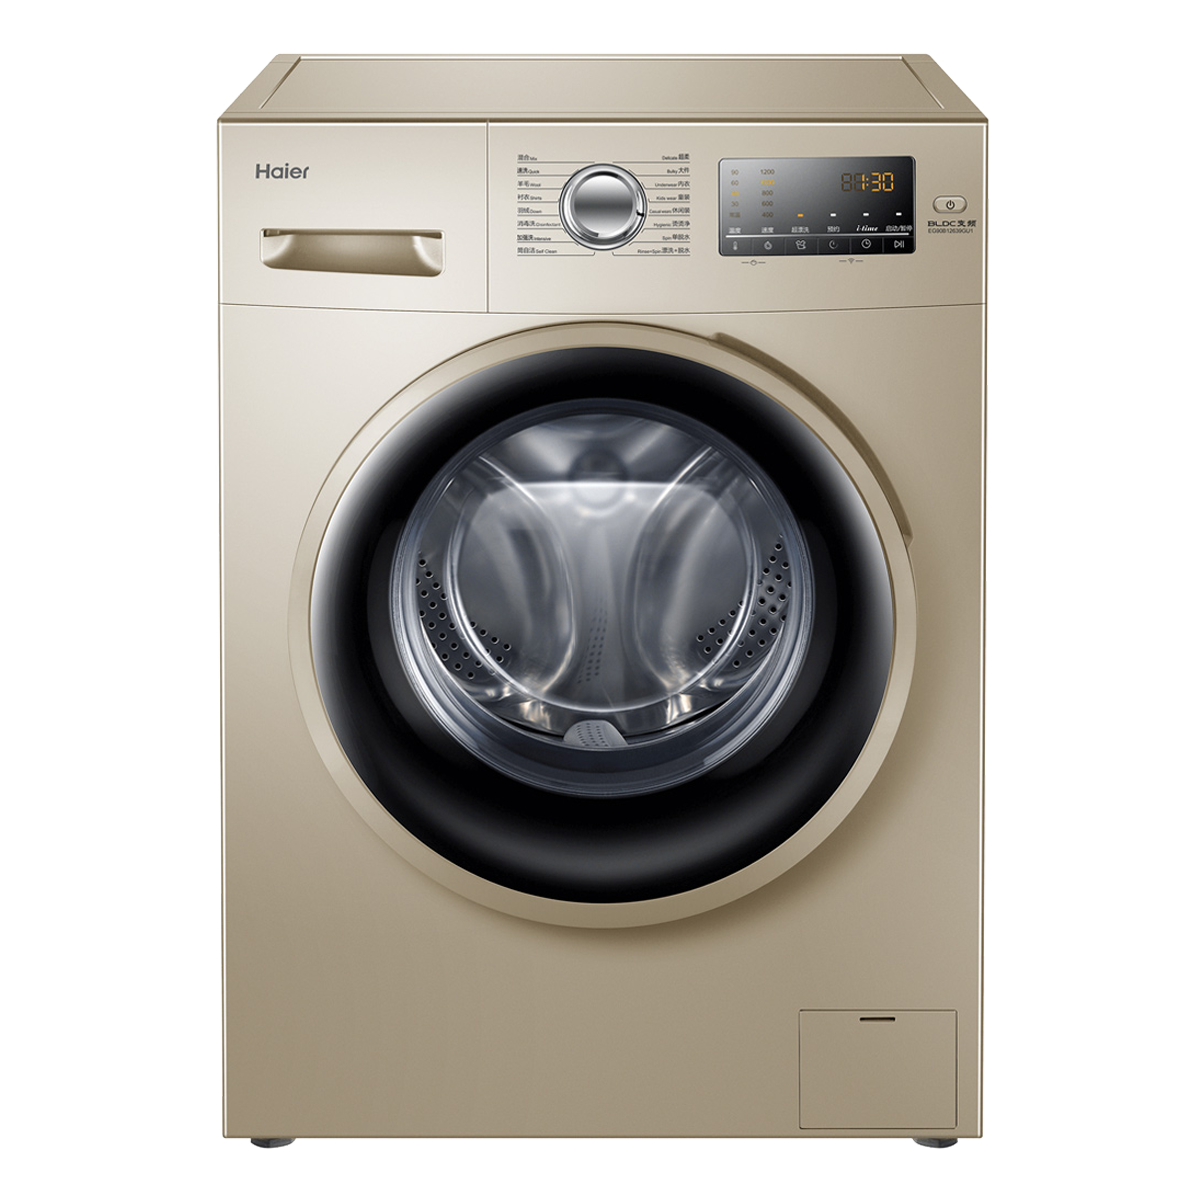 海尔Haier洗衣机 EG9012B639GU1 说明书